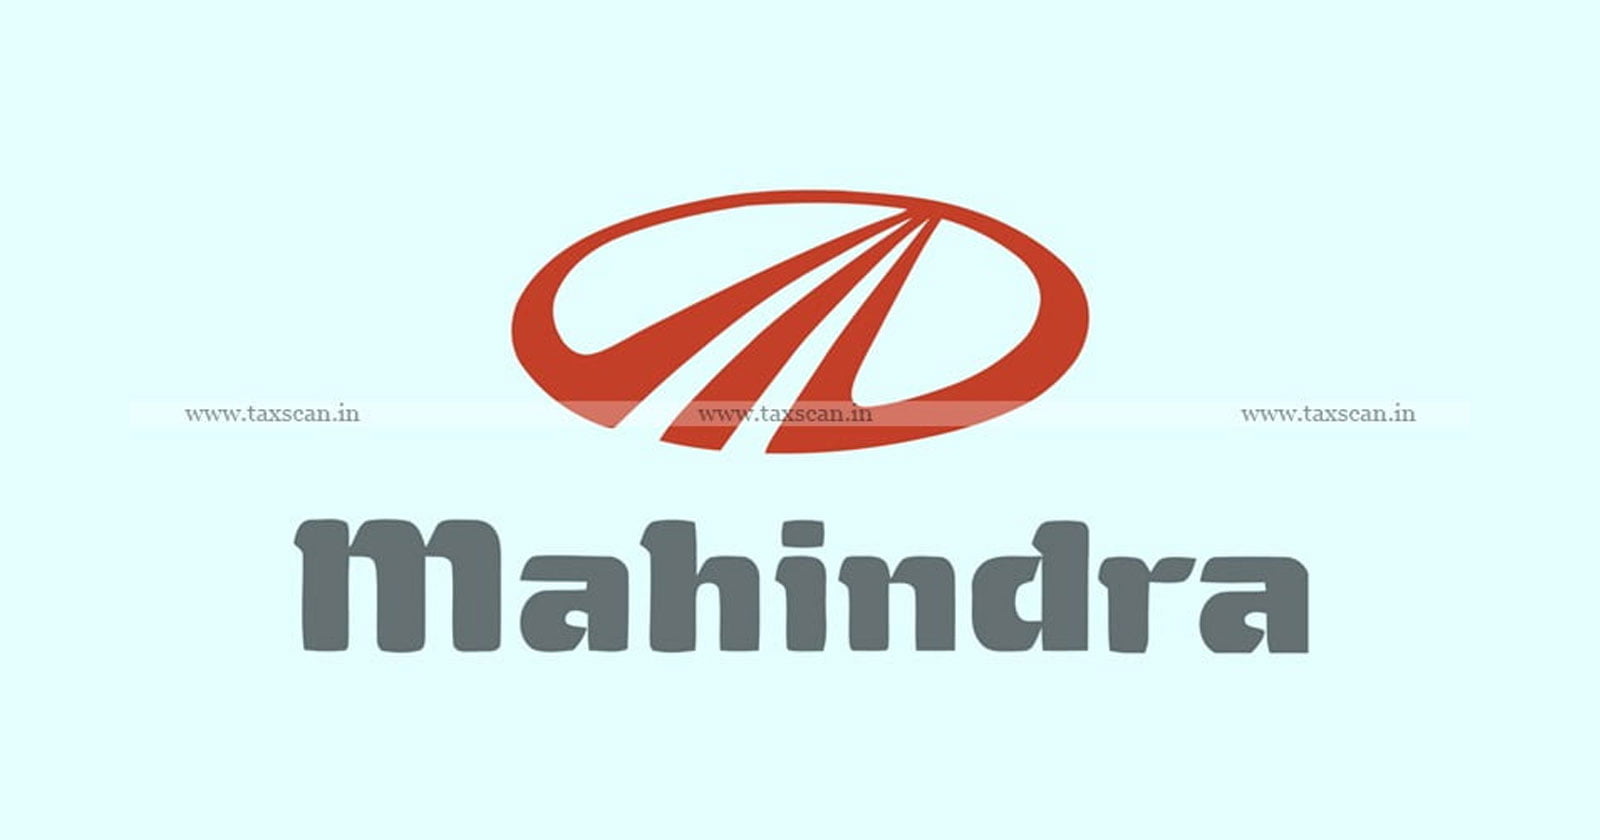 CA Vacancy in Mahindra - CA - Vacancy - Mahindra - taxscan